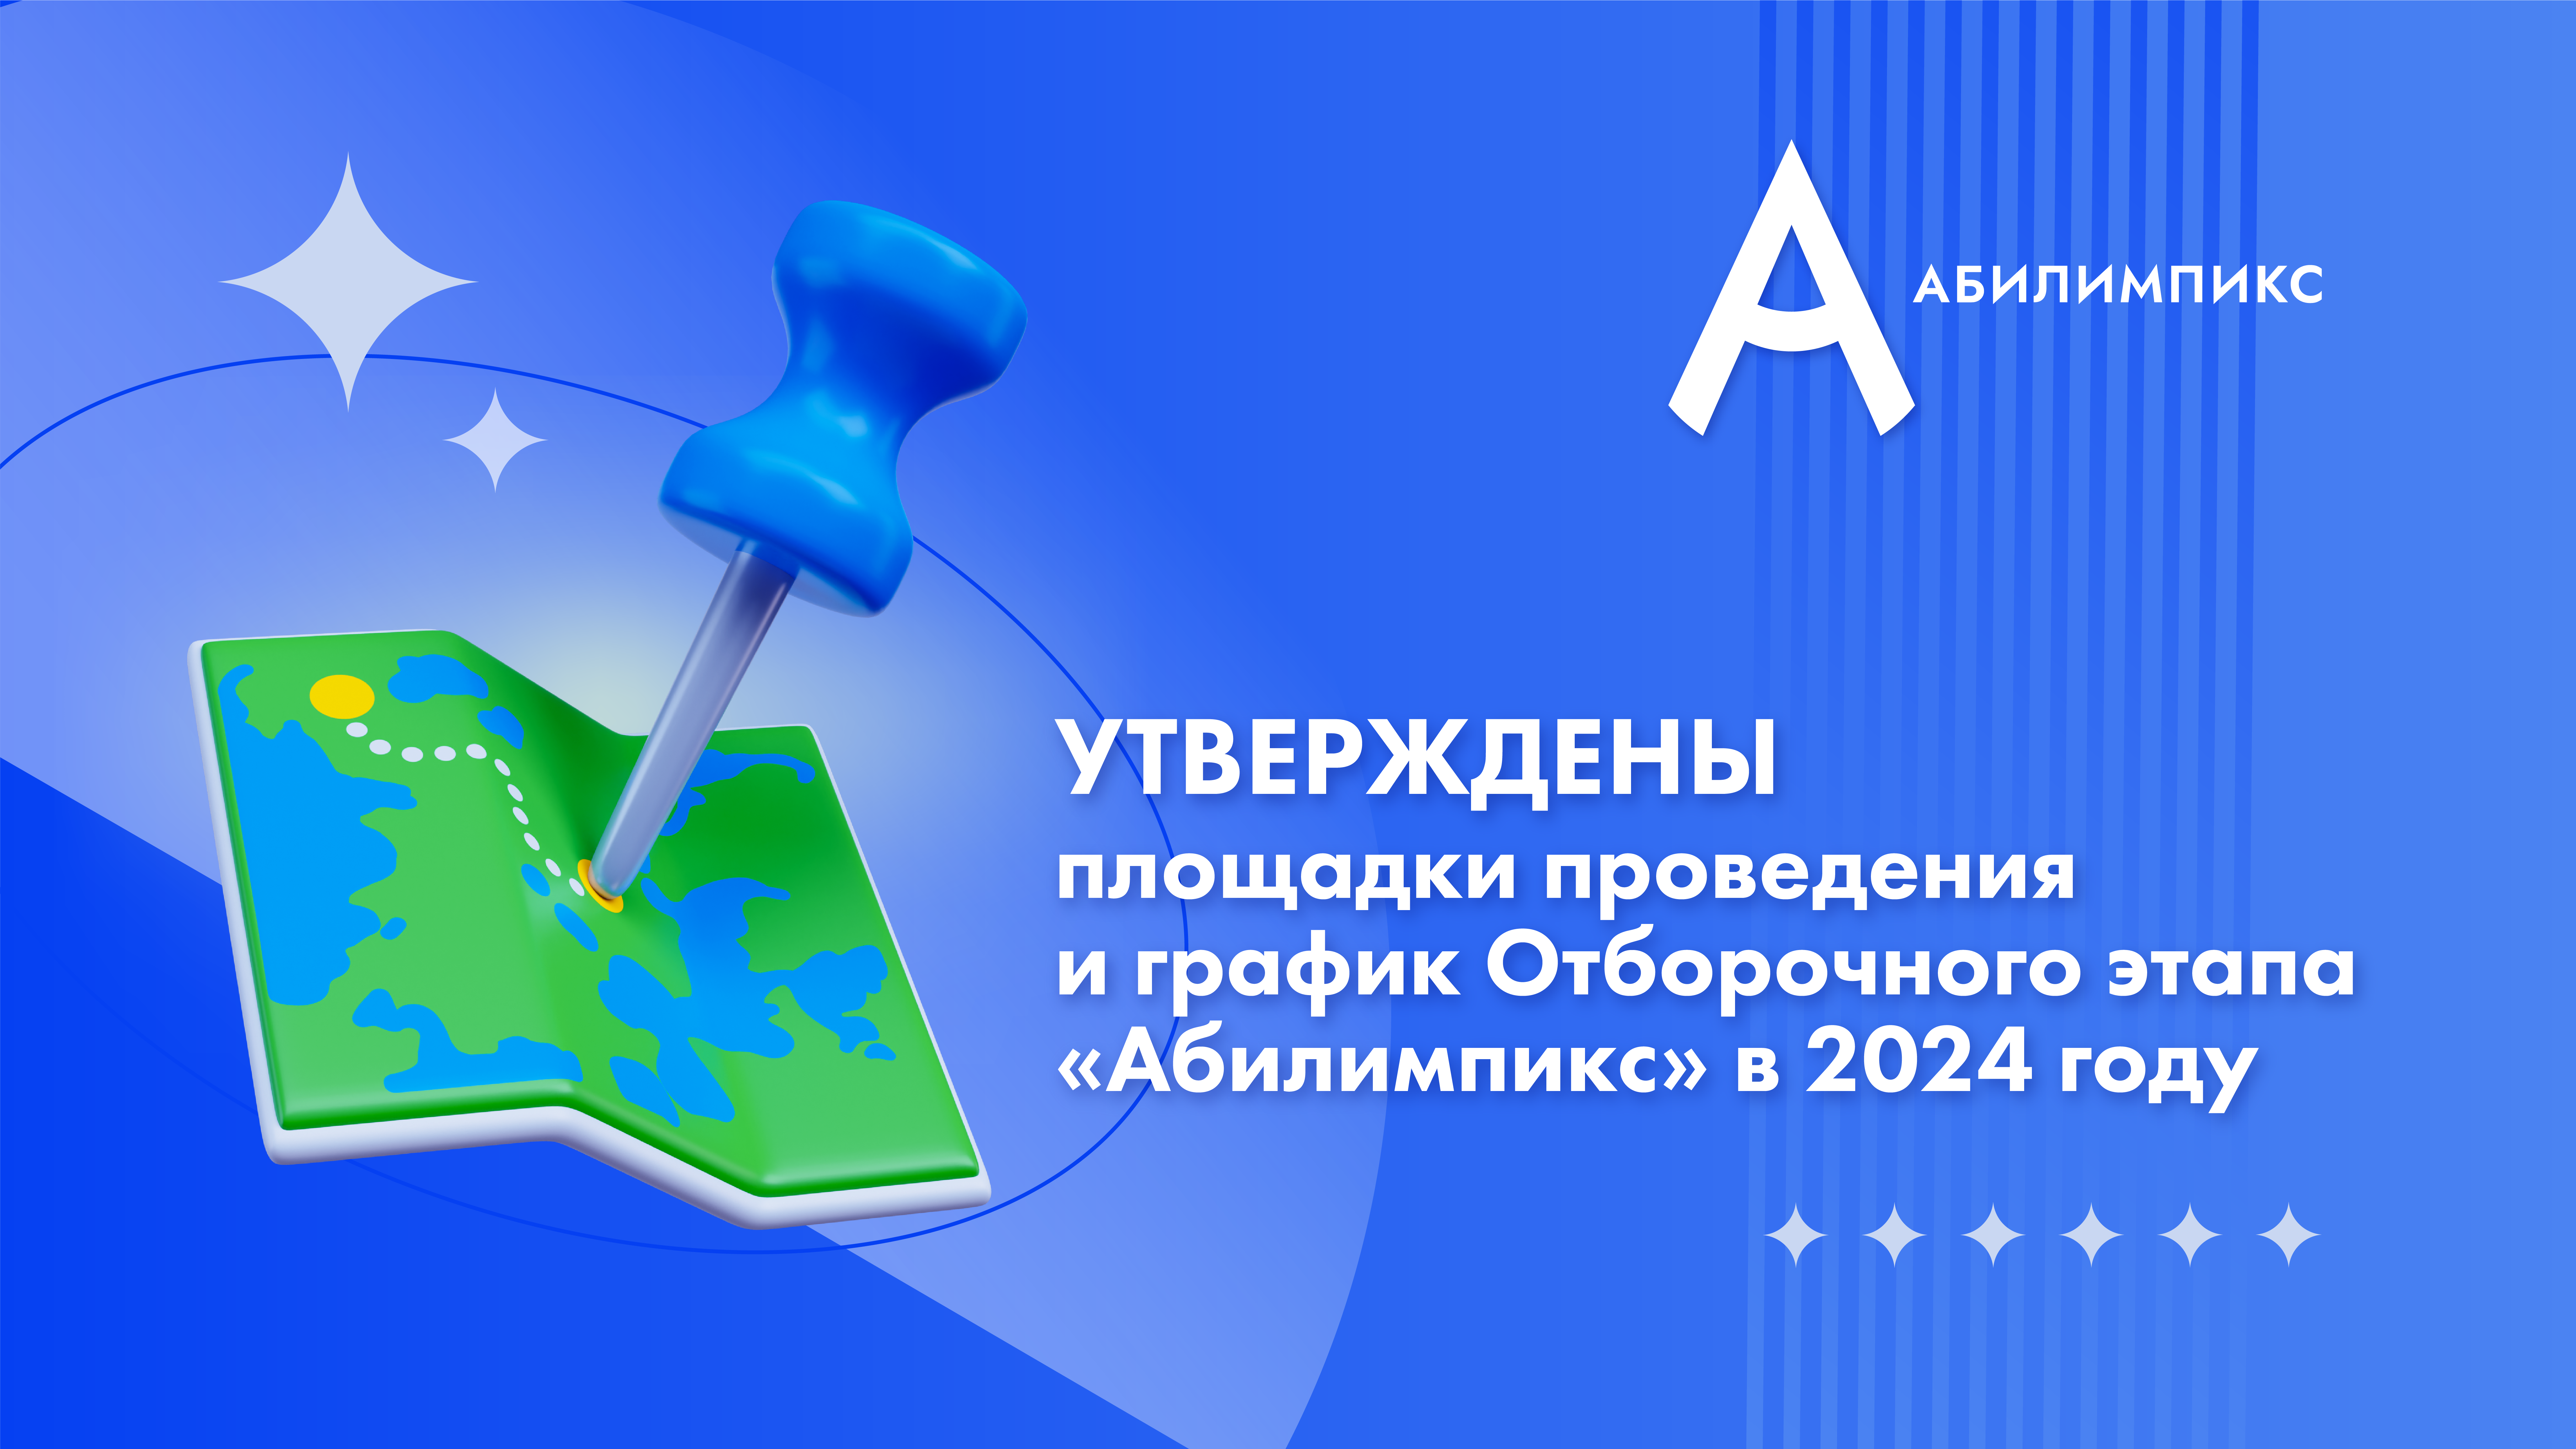 Утверждены площадки проведения и график Отборочного этапа «Абилимпикс» в 2024 году